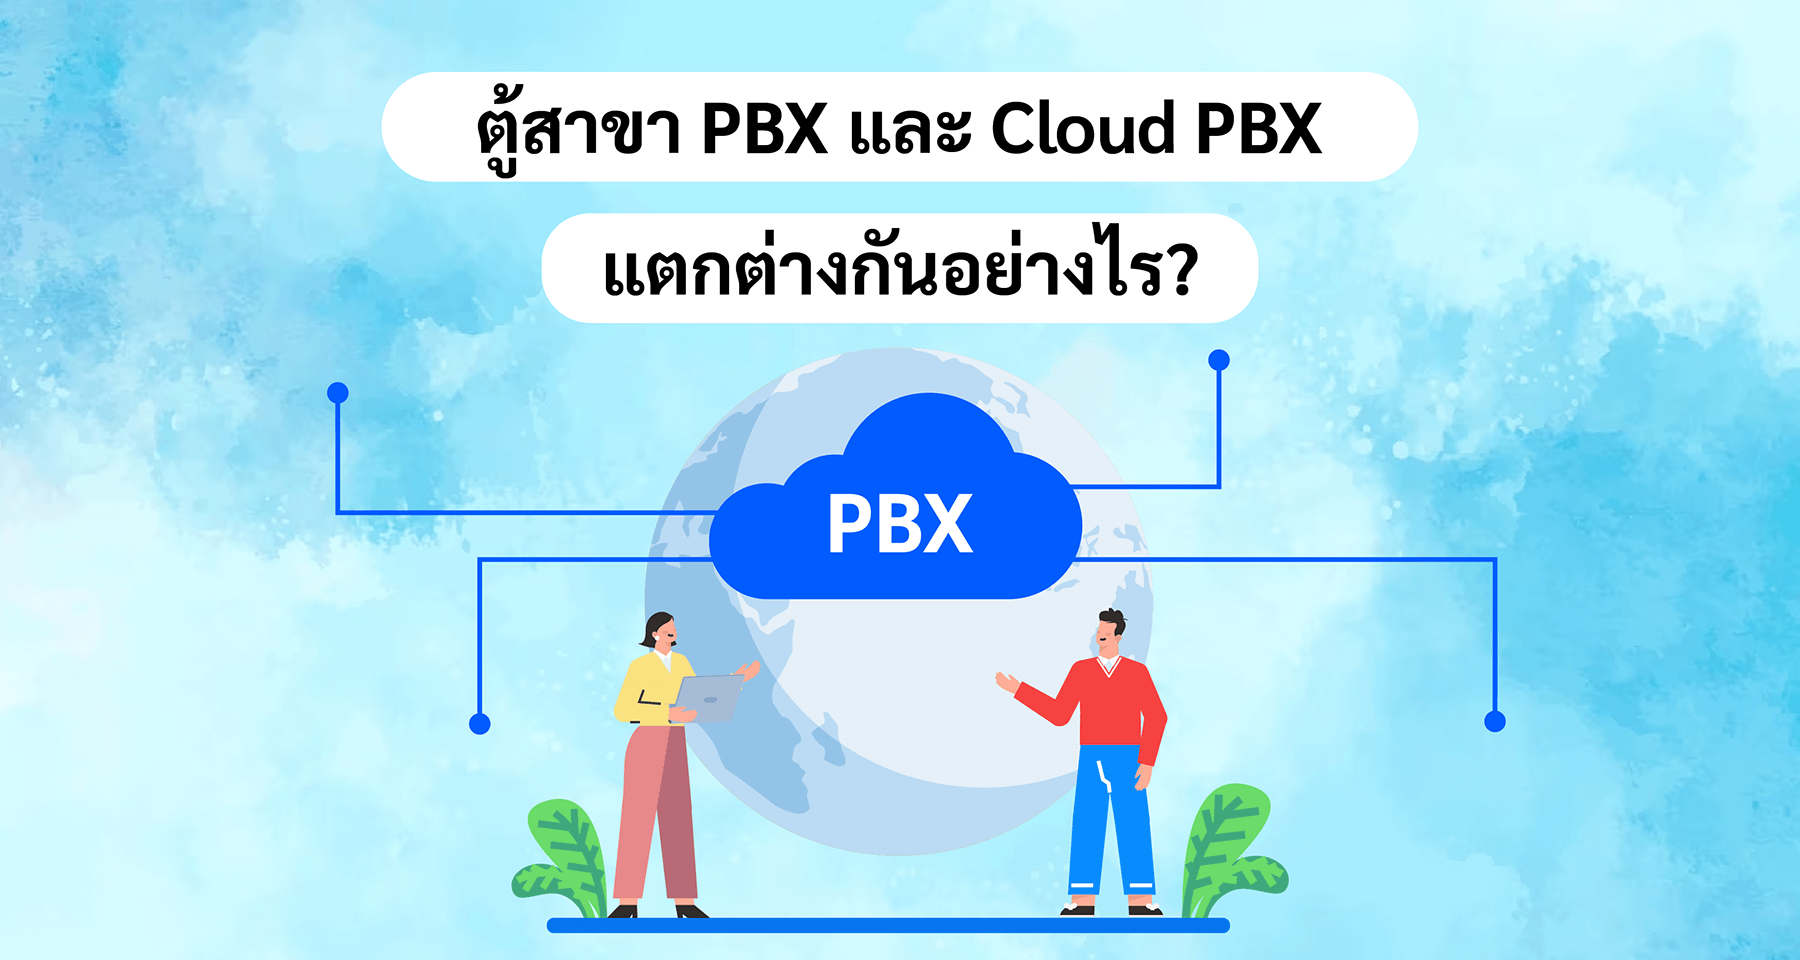 ตู้สาขา PBX และ Cloud PBX แตกต่างกันอย่างไร?